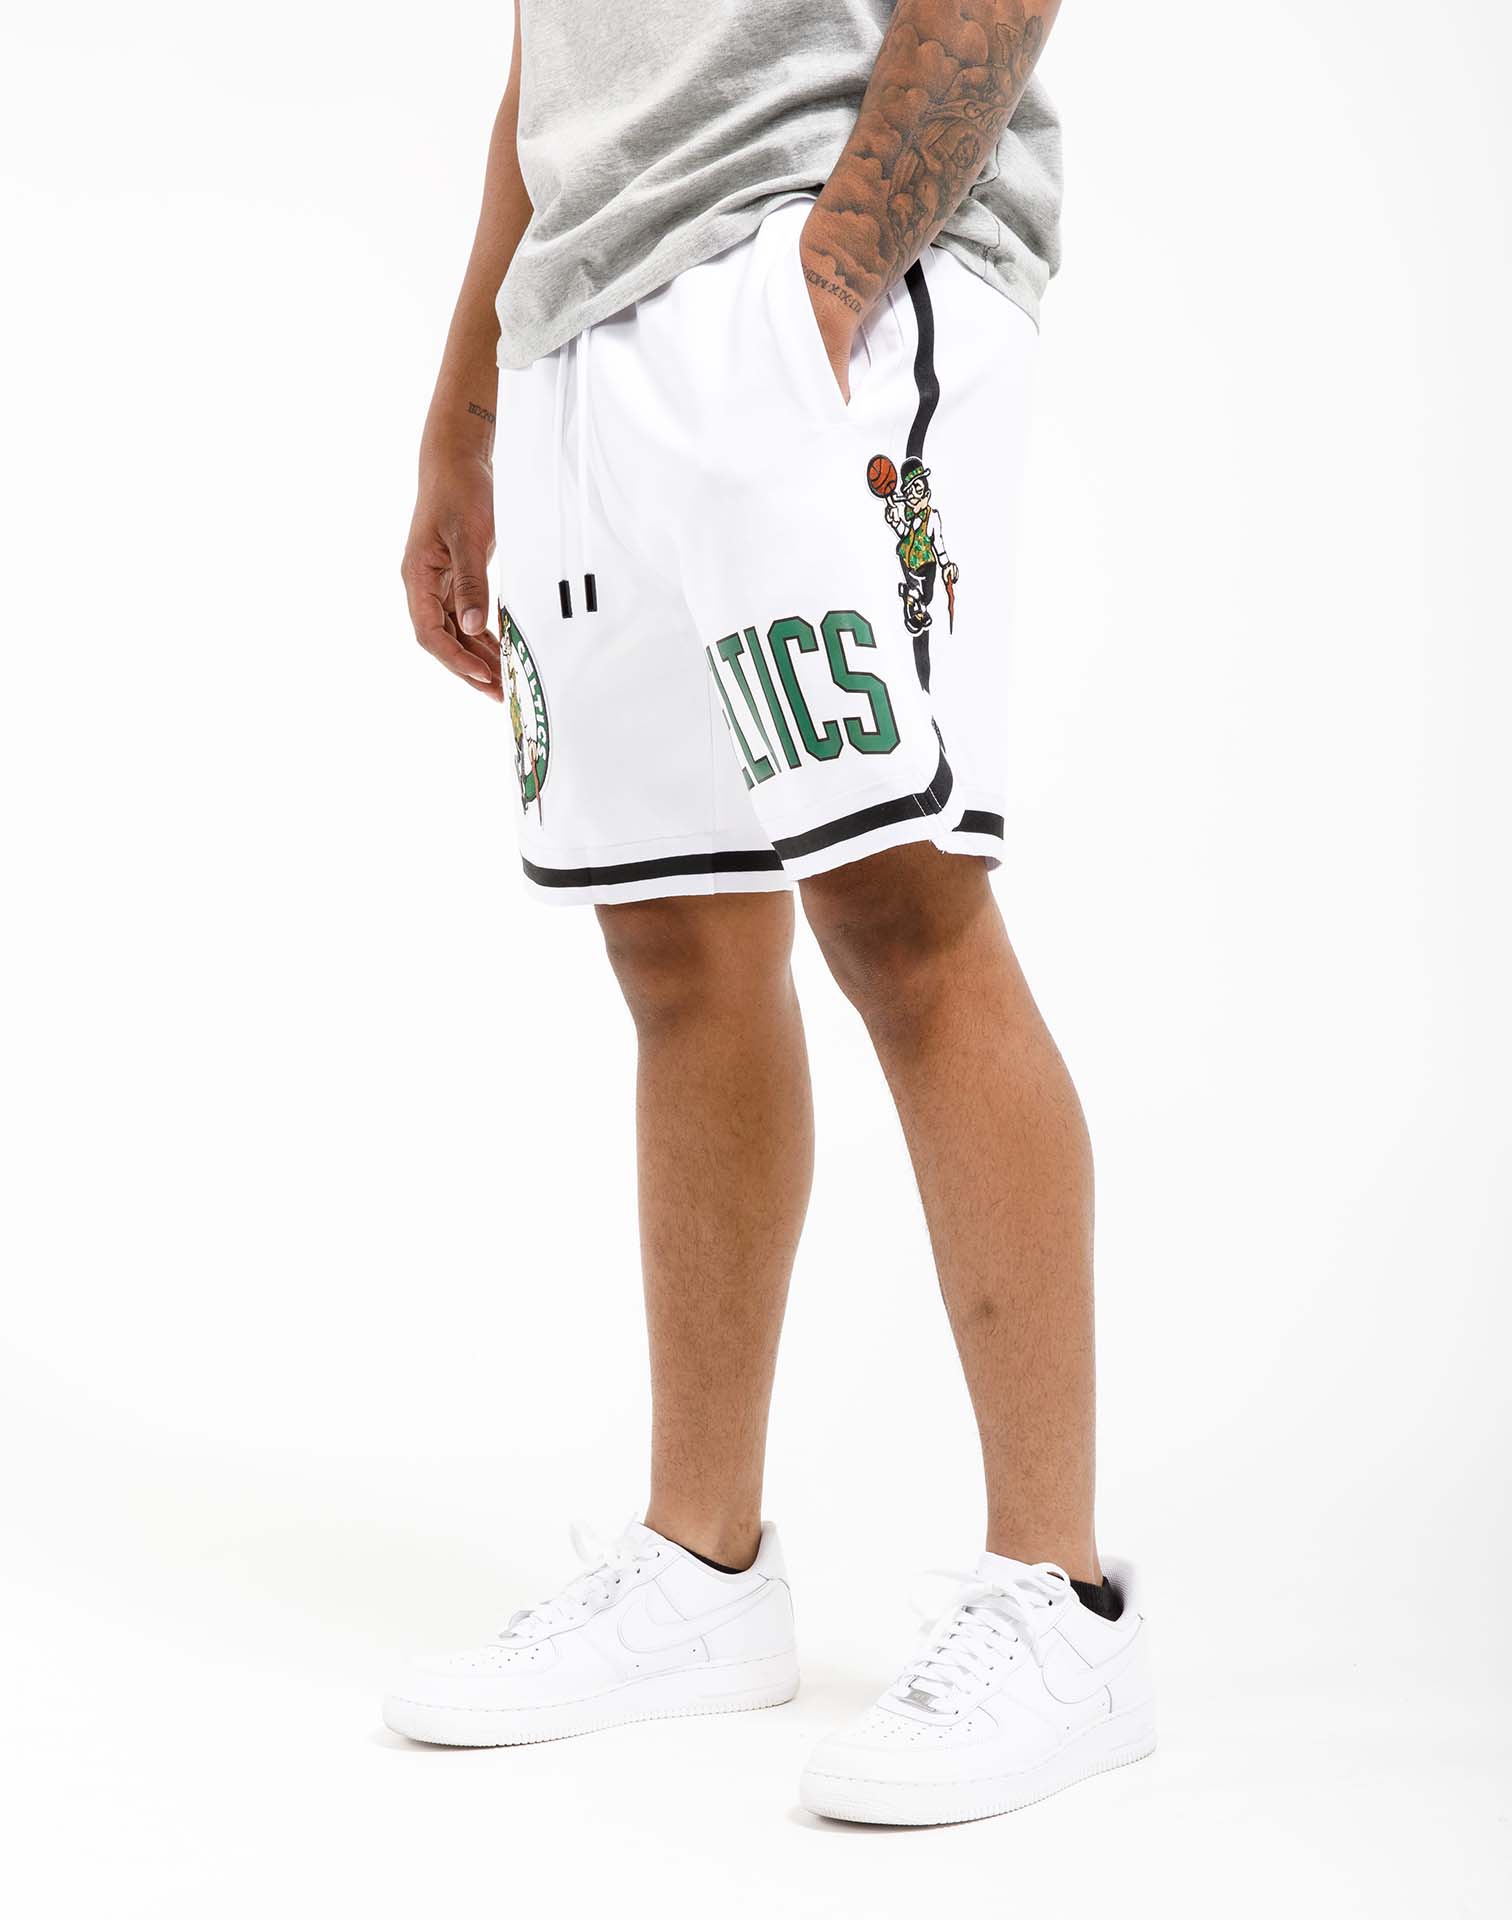 Boston Celtics Nike Player Short - Clover - Mens